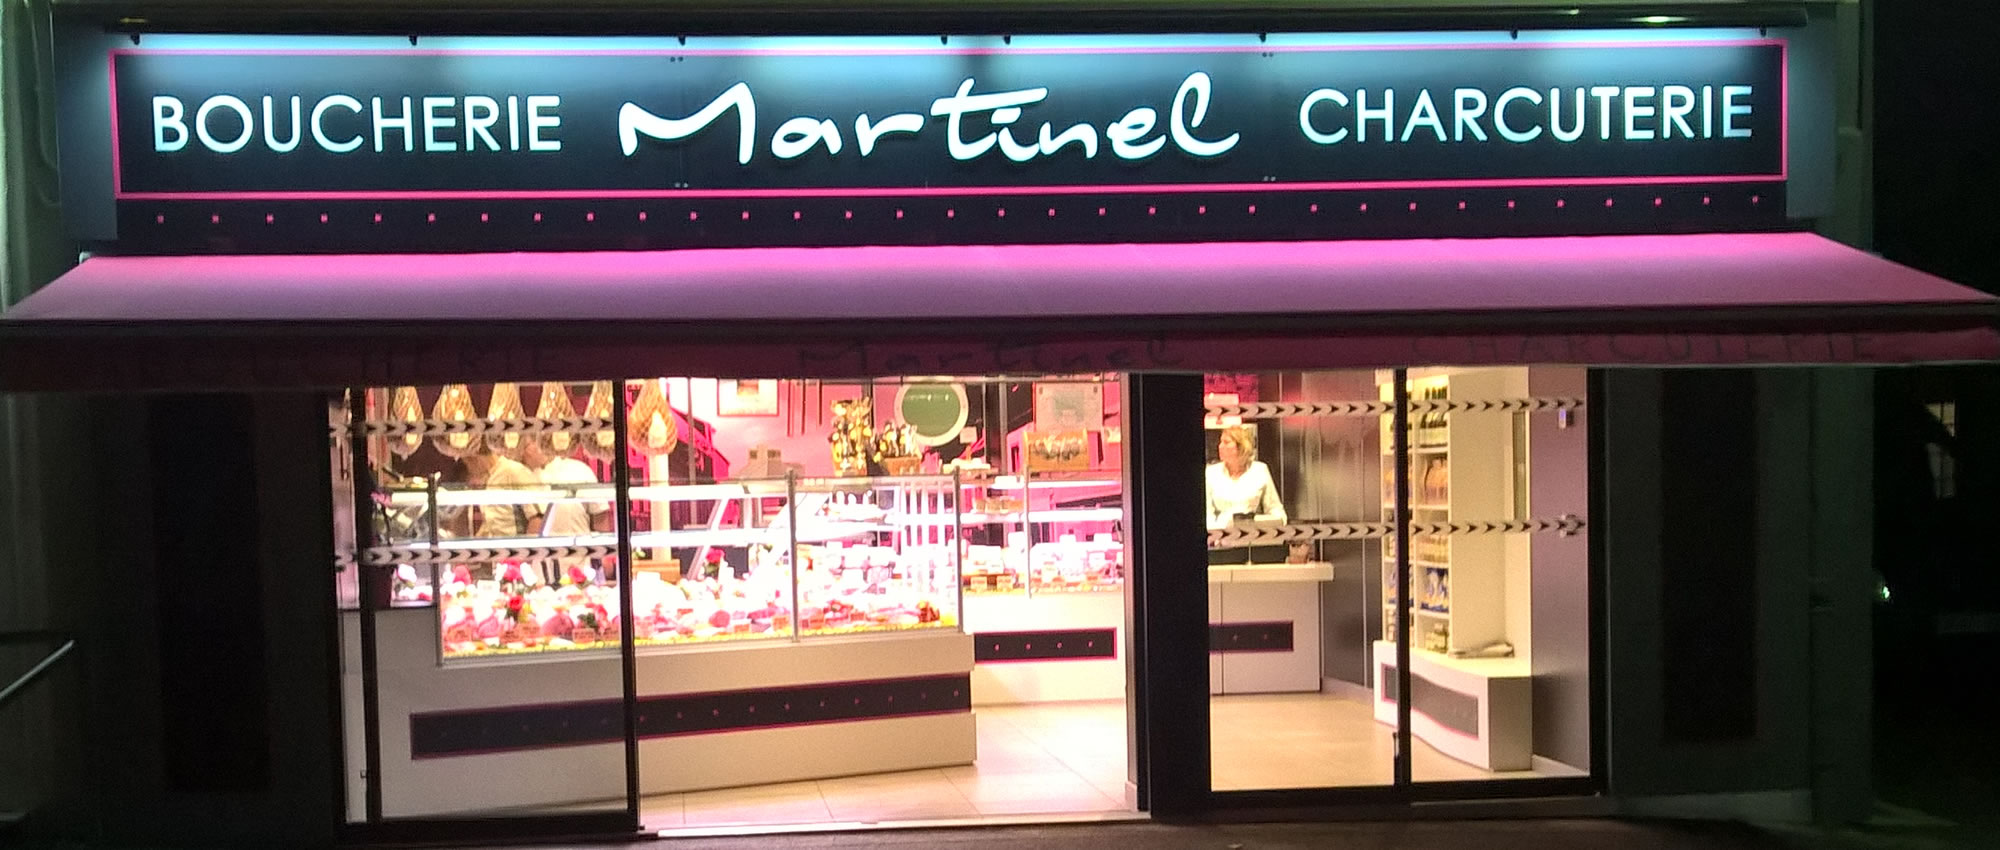 Devanture de la Boucherie-Charcuterie Martinel